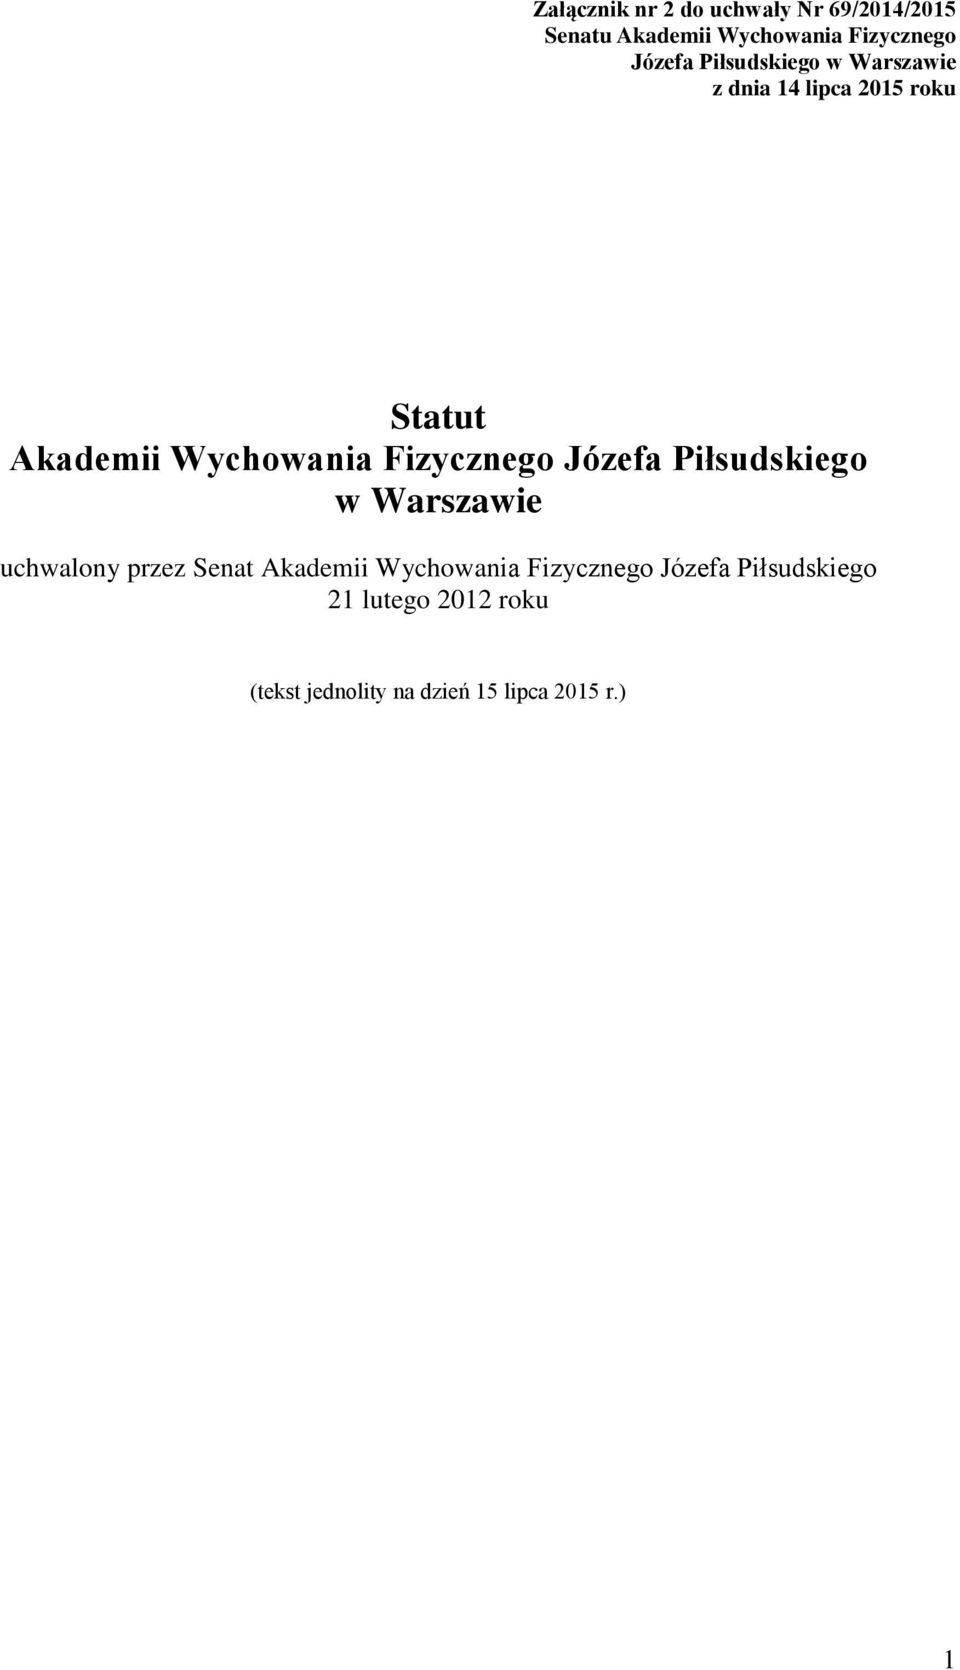 Fizycznego Józefa Piłsudskiego w Warszawie uchwalony przez Senat Akademii Wychowania